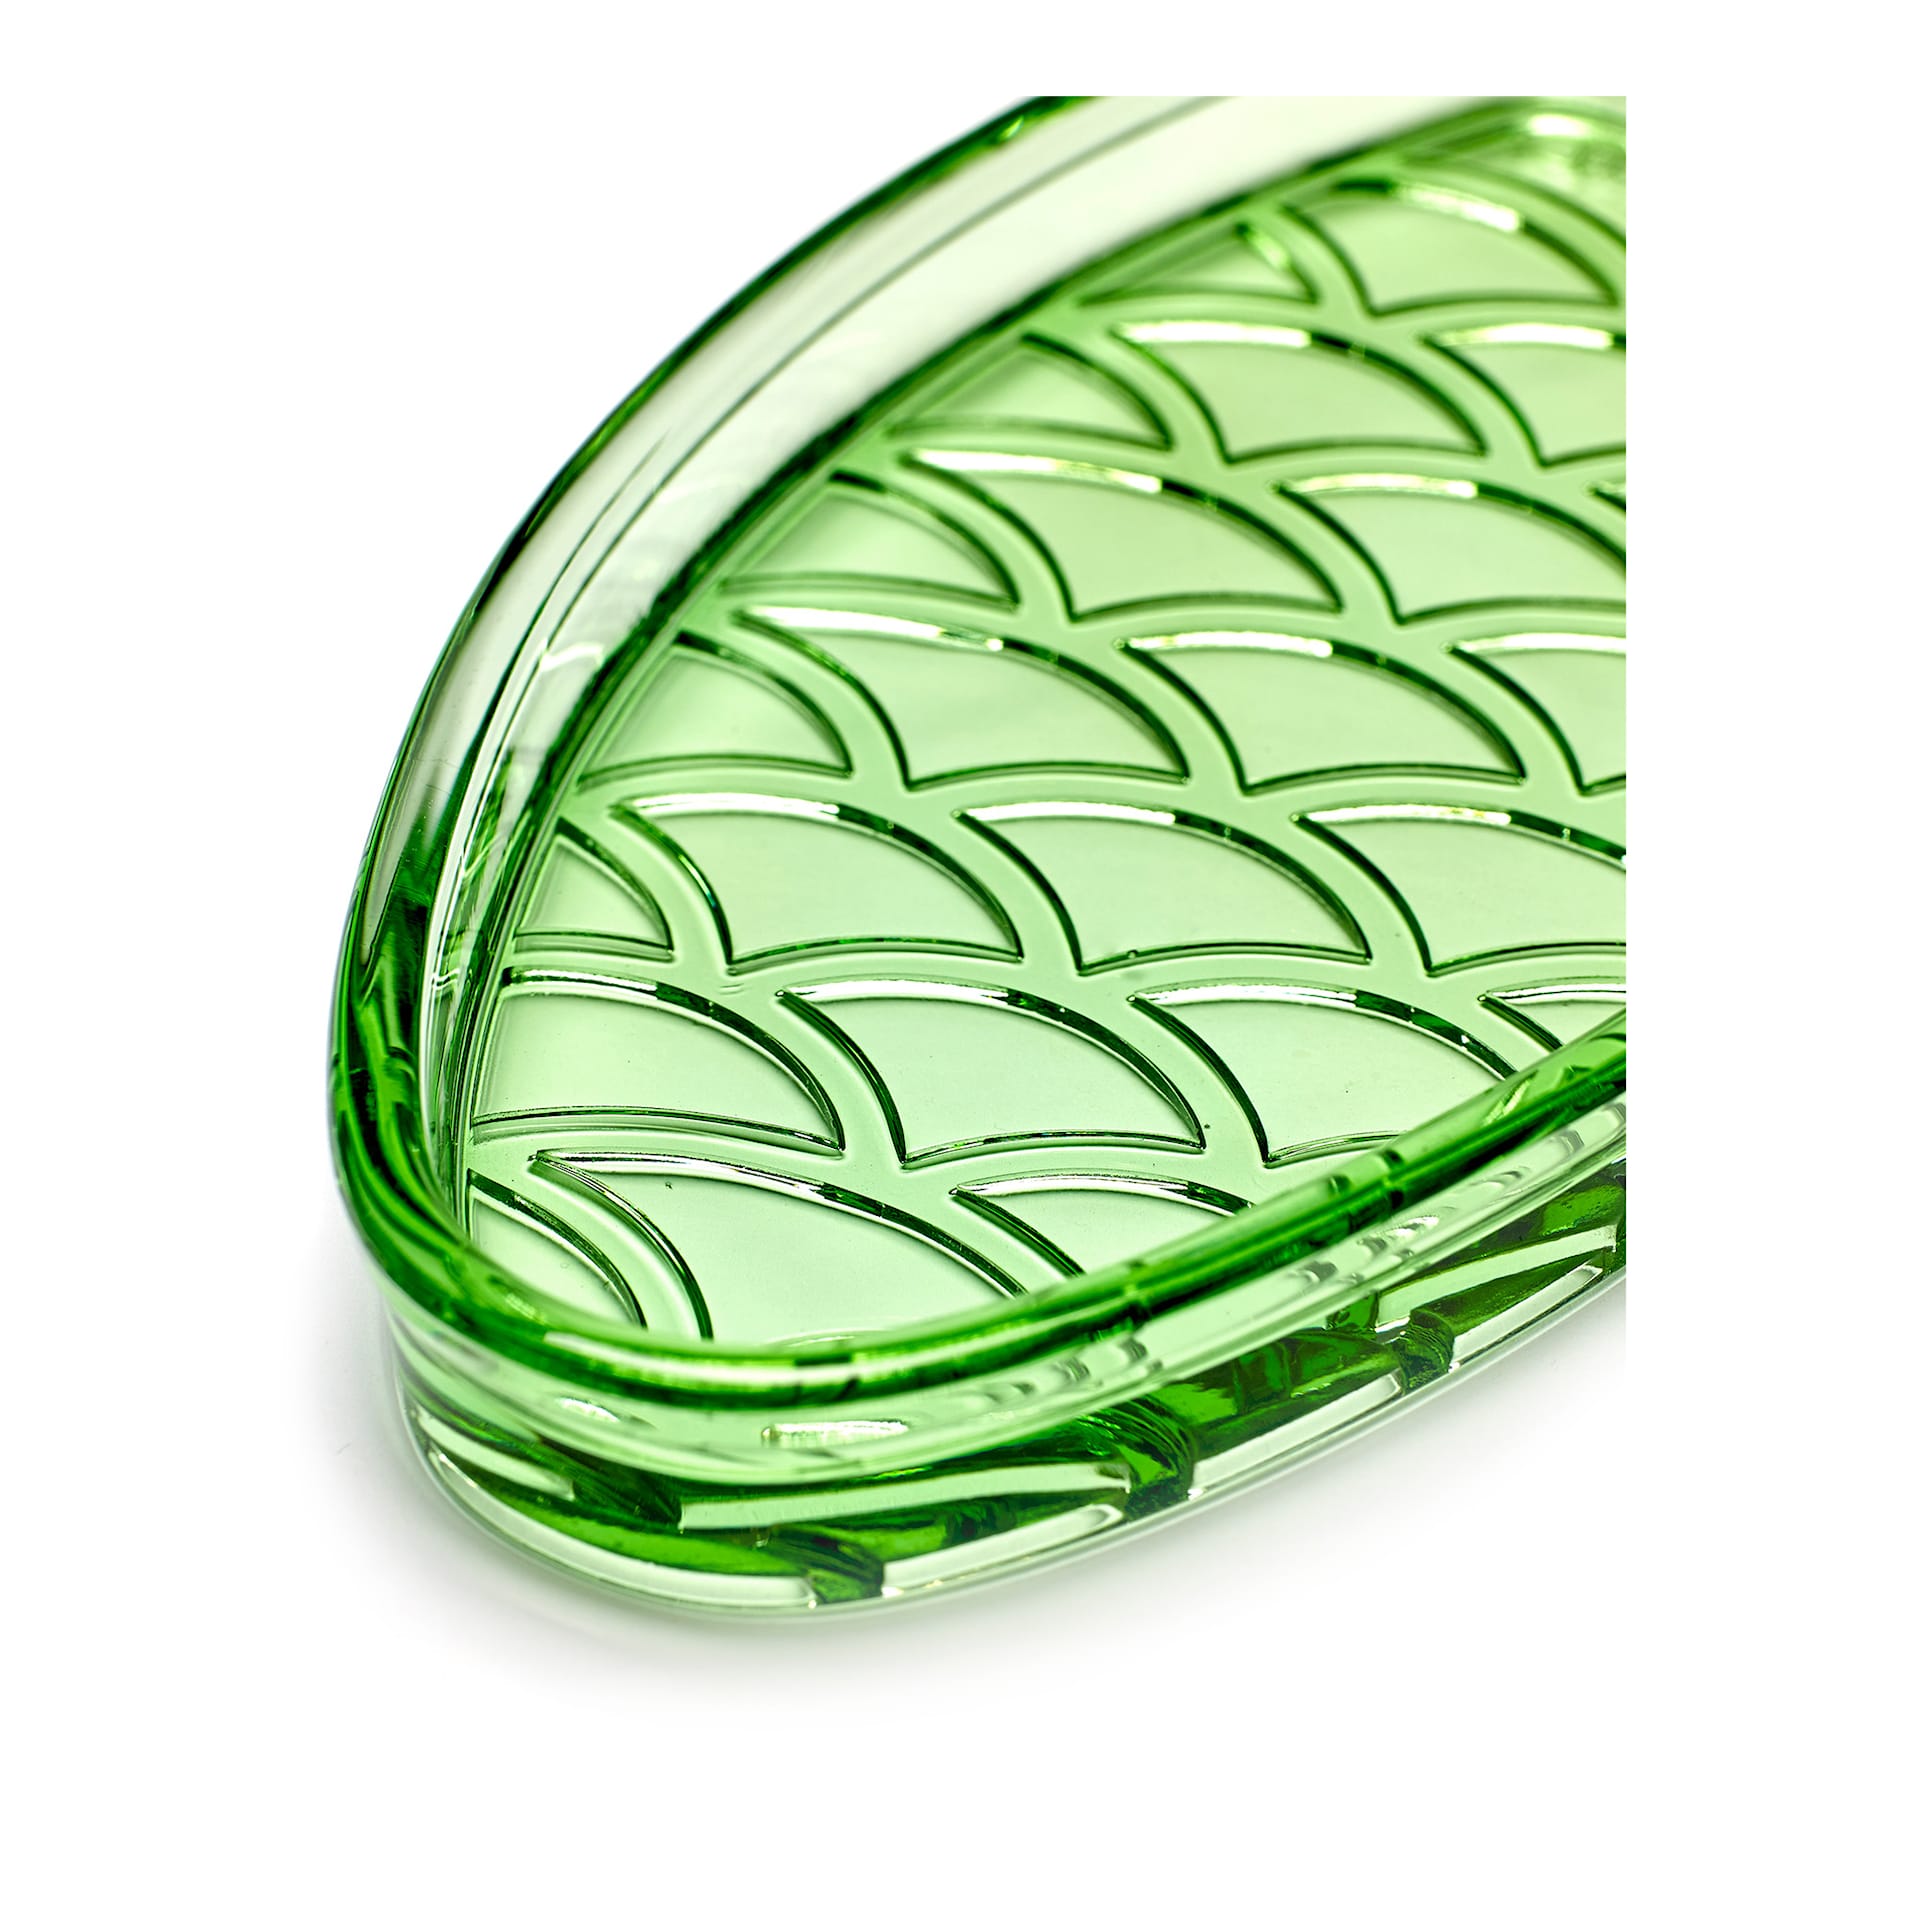 Fish Dish Small Transparent Green - Serax - NO GA